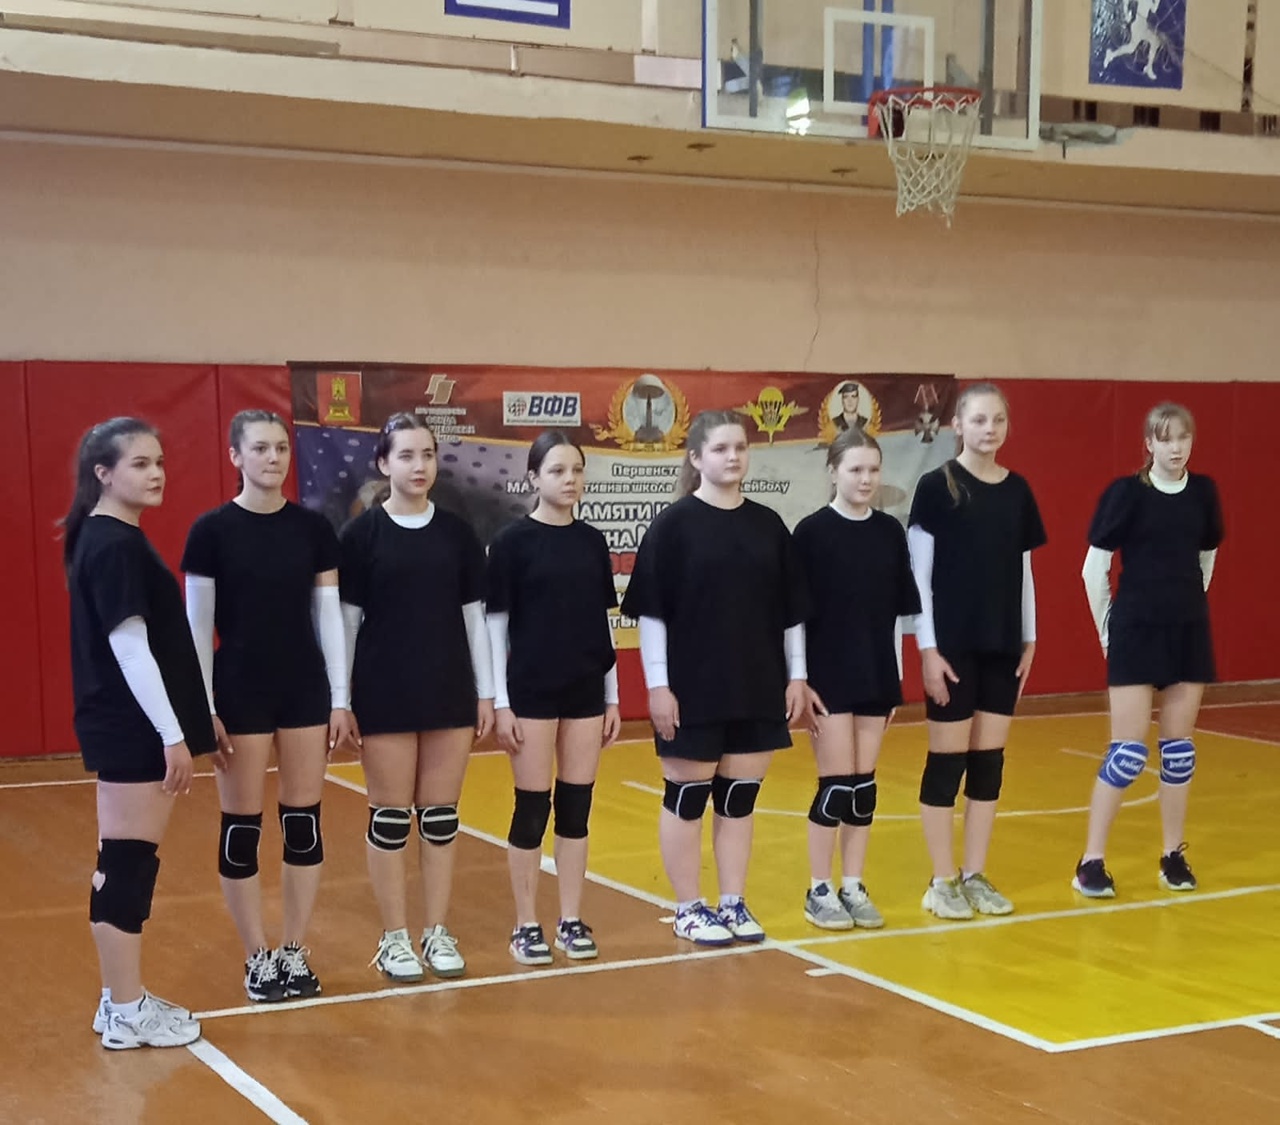 25-26 января состоялся муниципальный этап Всероссийских соревнований по волейболу "Серебряный мяч".